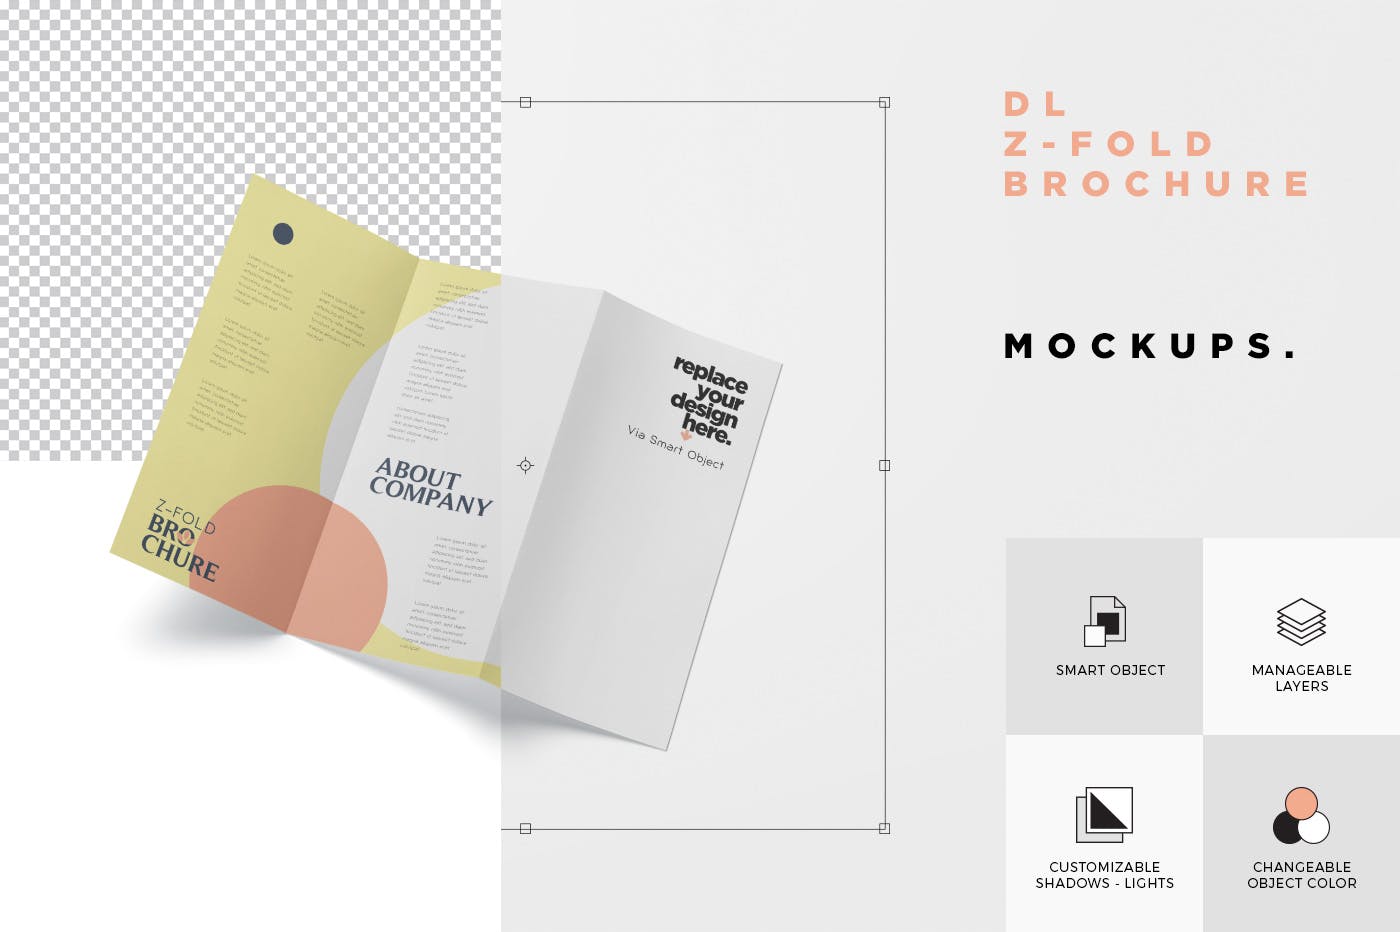 三折页设计风格企业传单/宣传单设计图样机第一素材精选 DL Z-Fold Brochure Mockup – 99 x 210 mm Size插图(7)